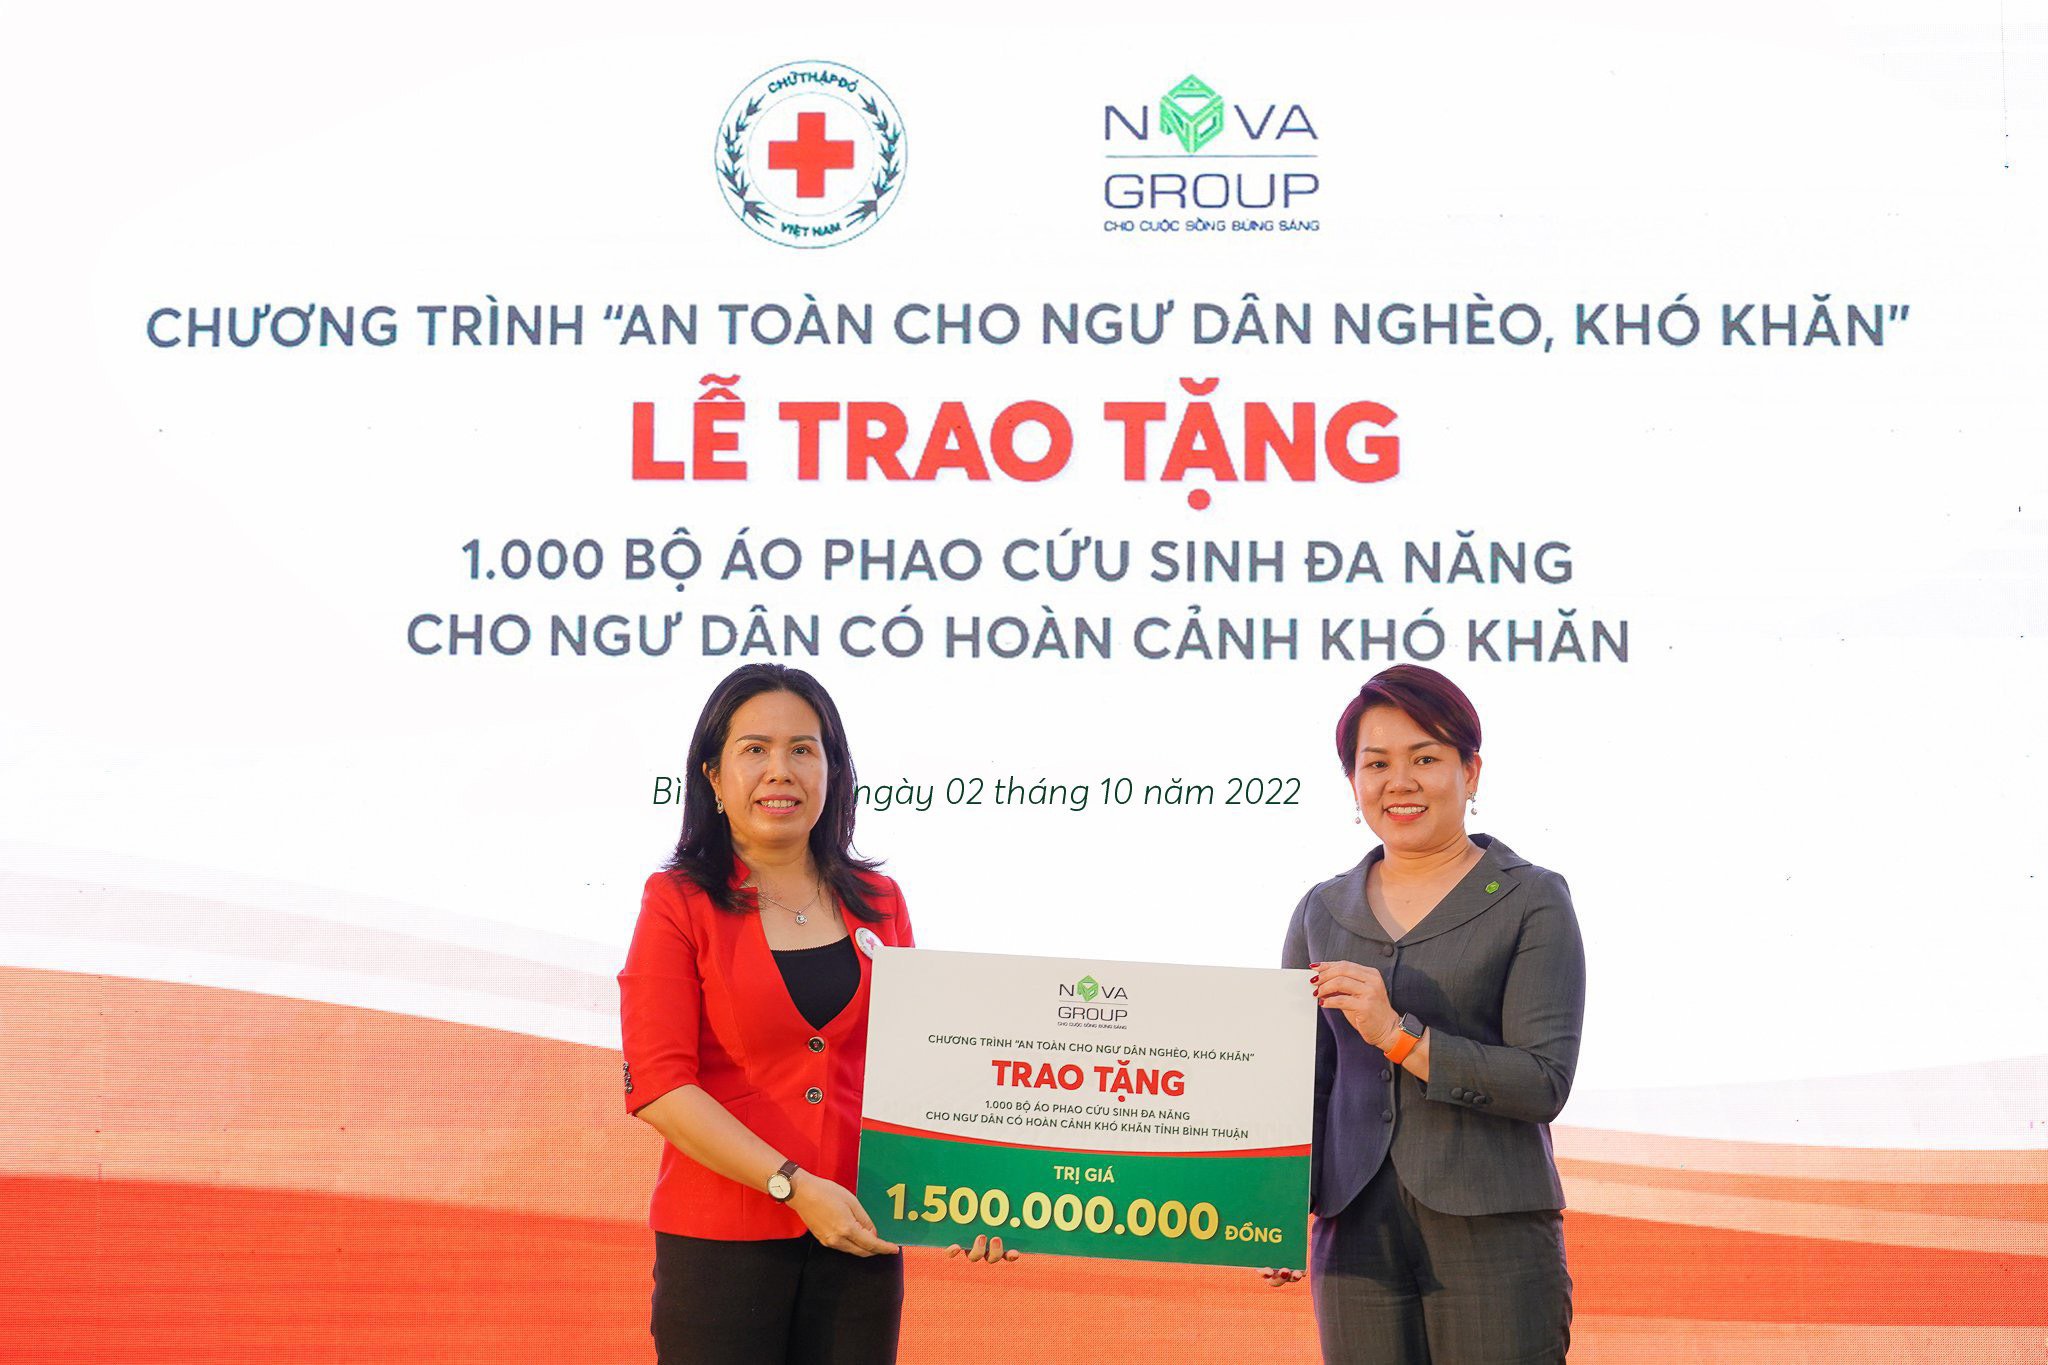 1.000 bộ áo phao cứu sinh đa năng trị giá 1,5 tỷ đồng được NovaGroup và Hội Chữ thập đỏ Việt Nam trao tặng cho ngư dân nghèo, cận nghèo, có hoàn cảnh khó khăn tại các khu vực: thành phố Phan Thiết (502 bộ), thị xã La Gi (266 bộ), huyện Tuy Phong (203 bộ), huyện Hàm Thuận Nam (29 bộ).